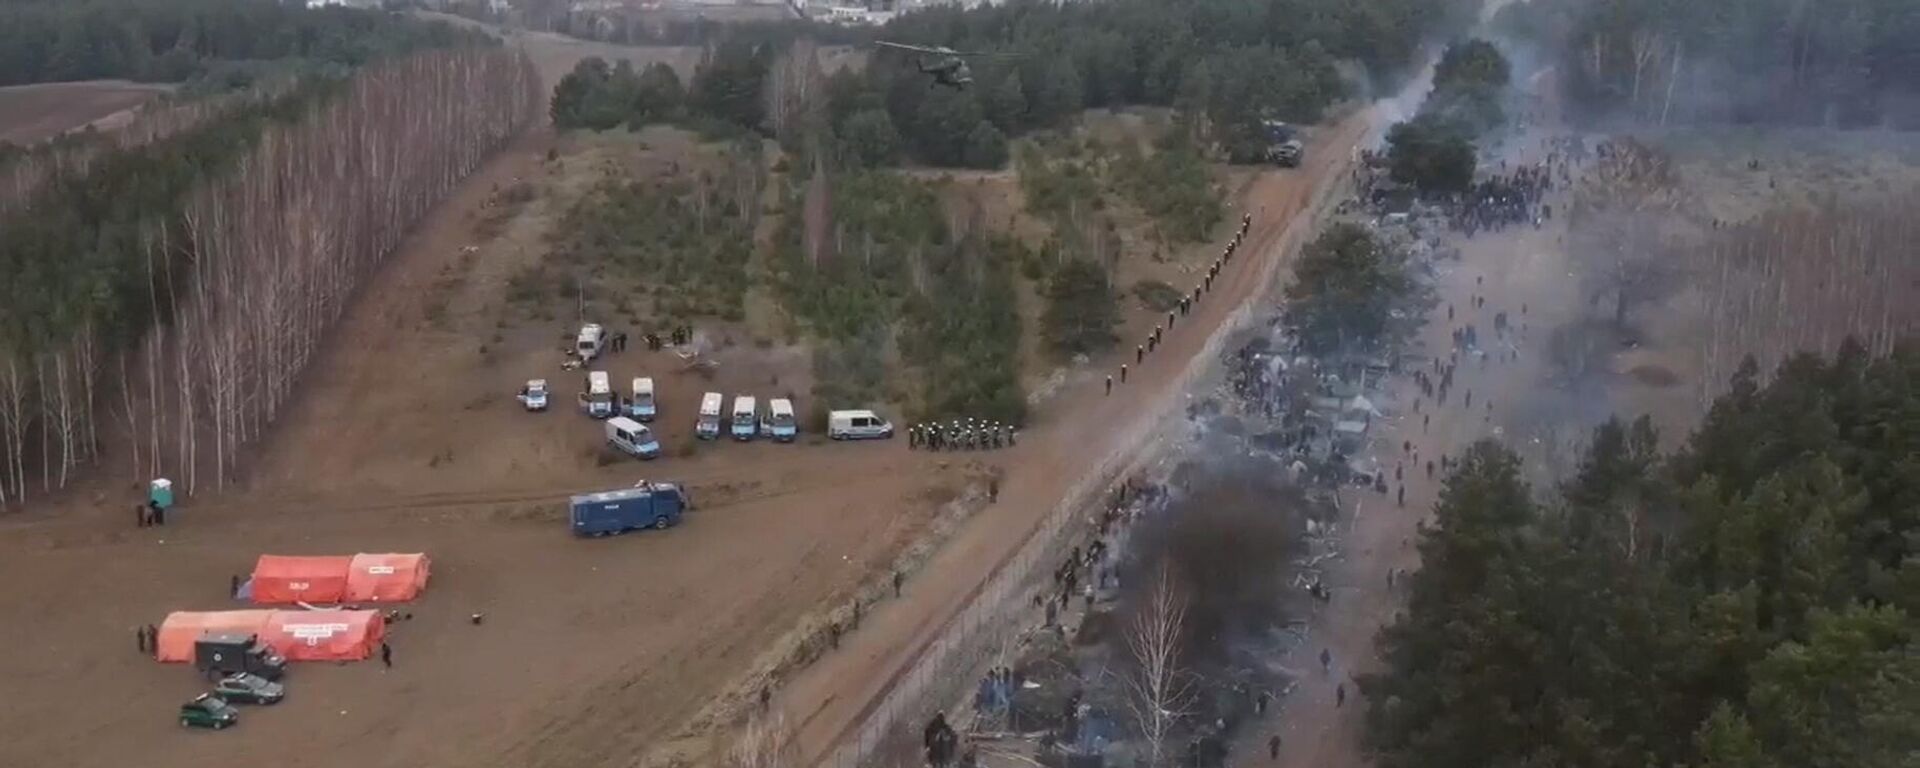 Как выглядит лагерь мигрантов с высоты - видео с коптер - Sputnik Беларусь, 1920, 13.11.2021